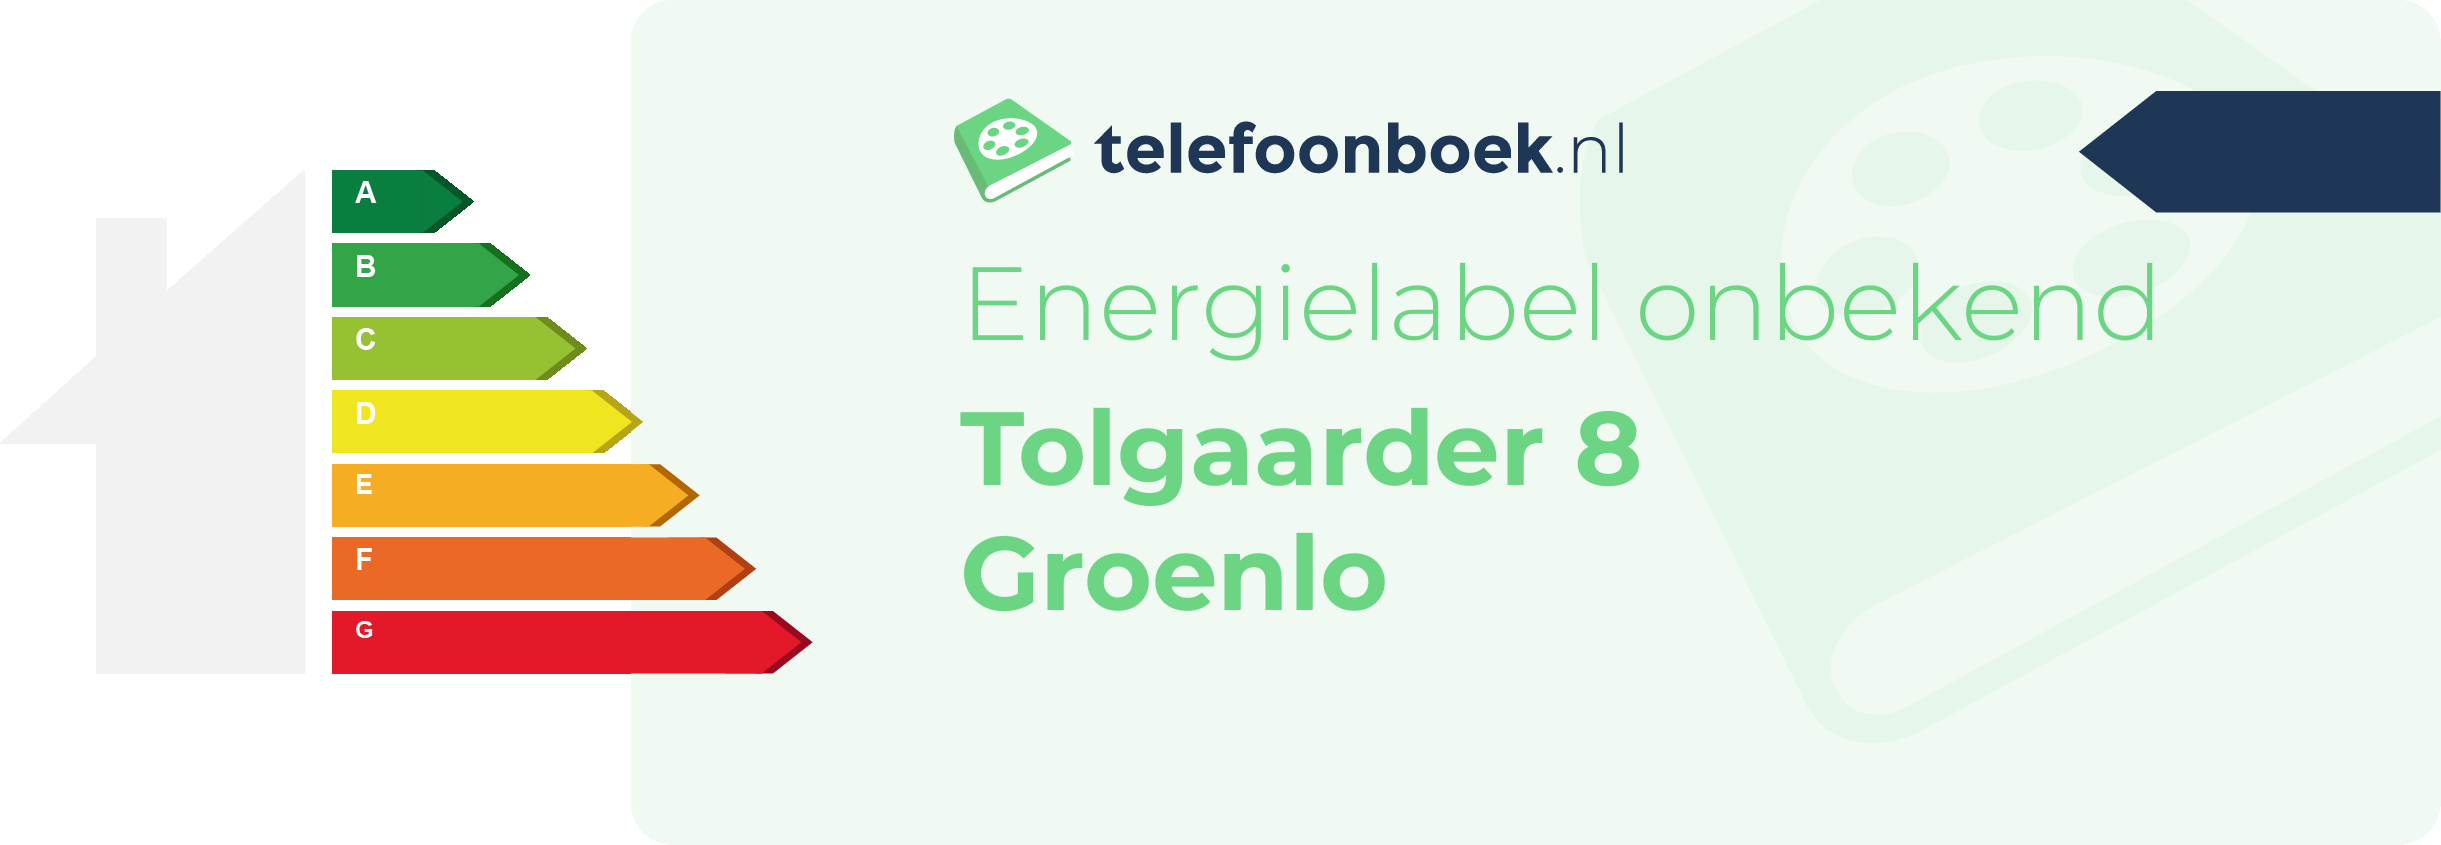 Energielabel Tolgaarder 8 Groenlo